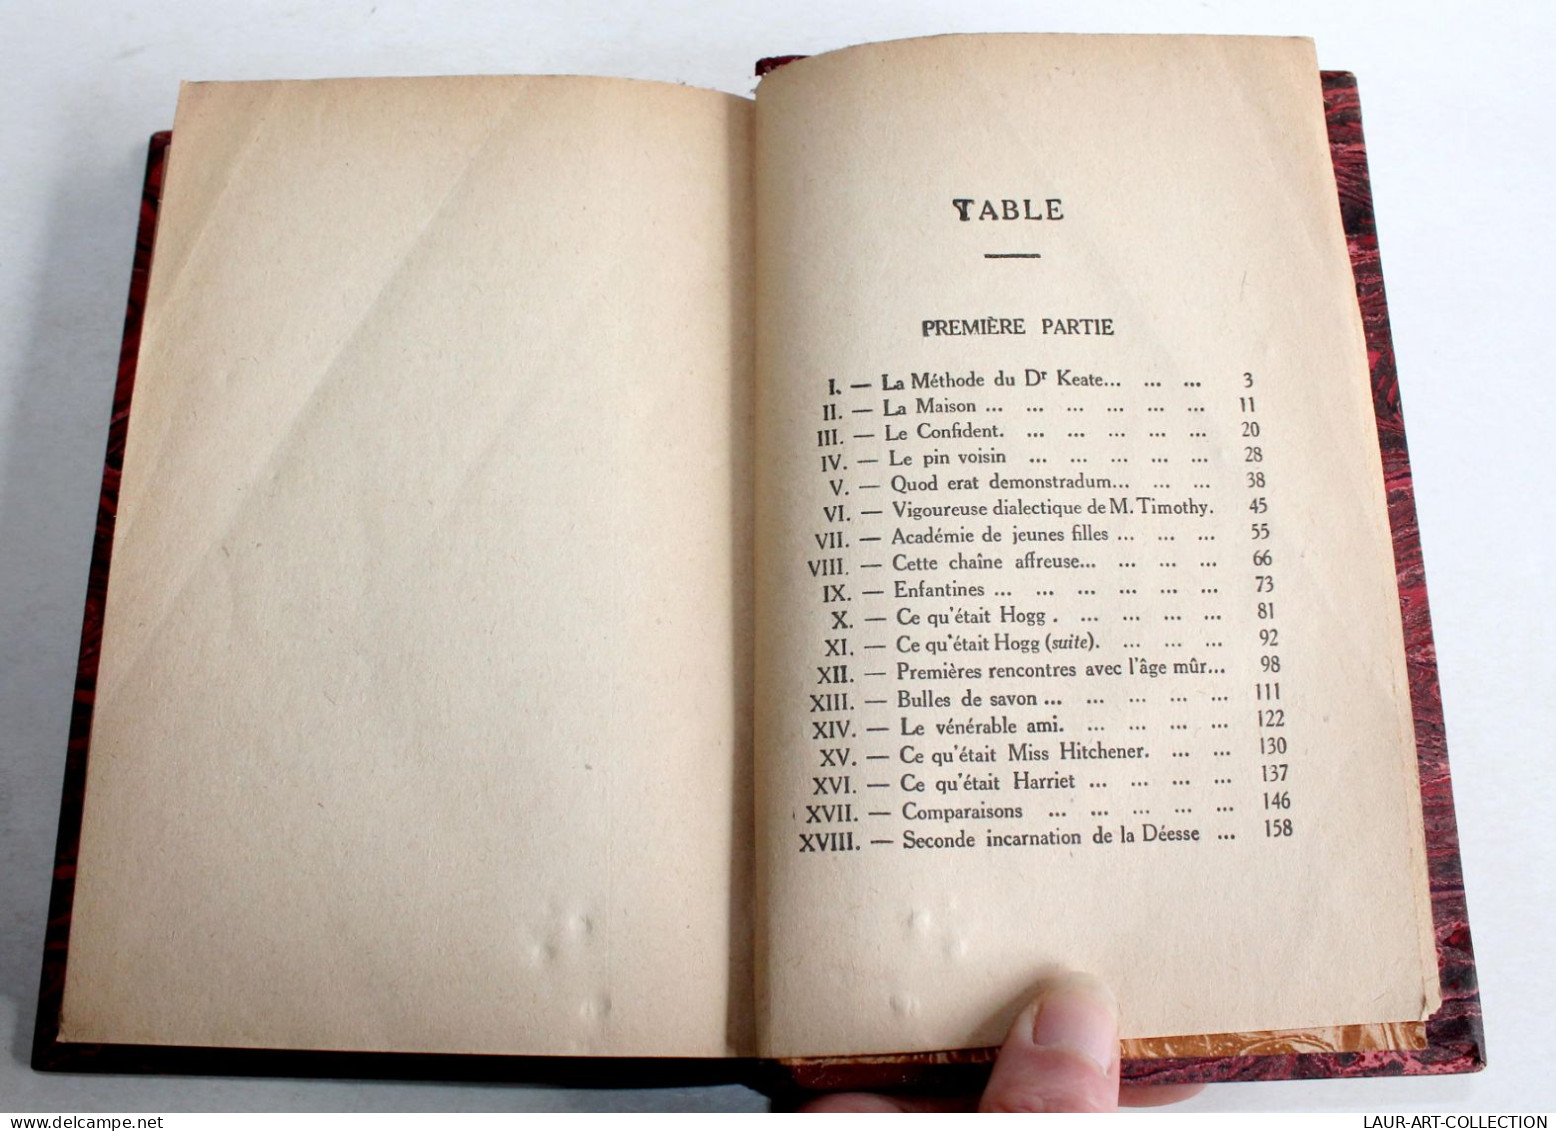 ARIEL OU LA VIE DE SHELLEY Par ANDRE MAUROIS 1923 EDITIONS BERNARD GRASSET / LIVRE ANCIEN XXe SIECLE (1303.69) - 1901-1940